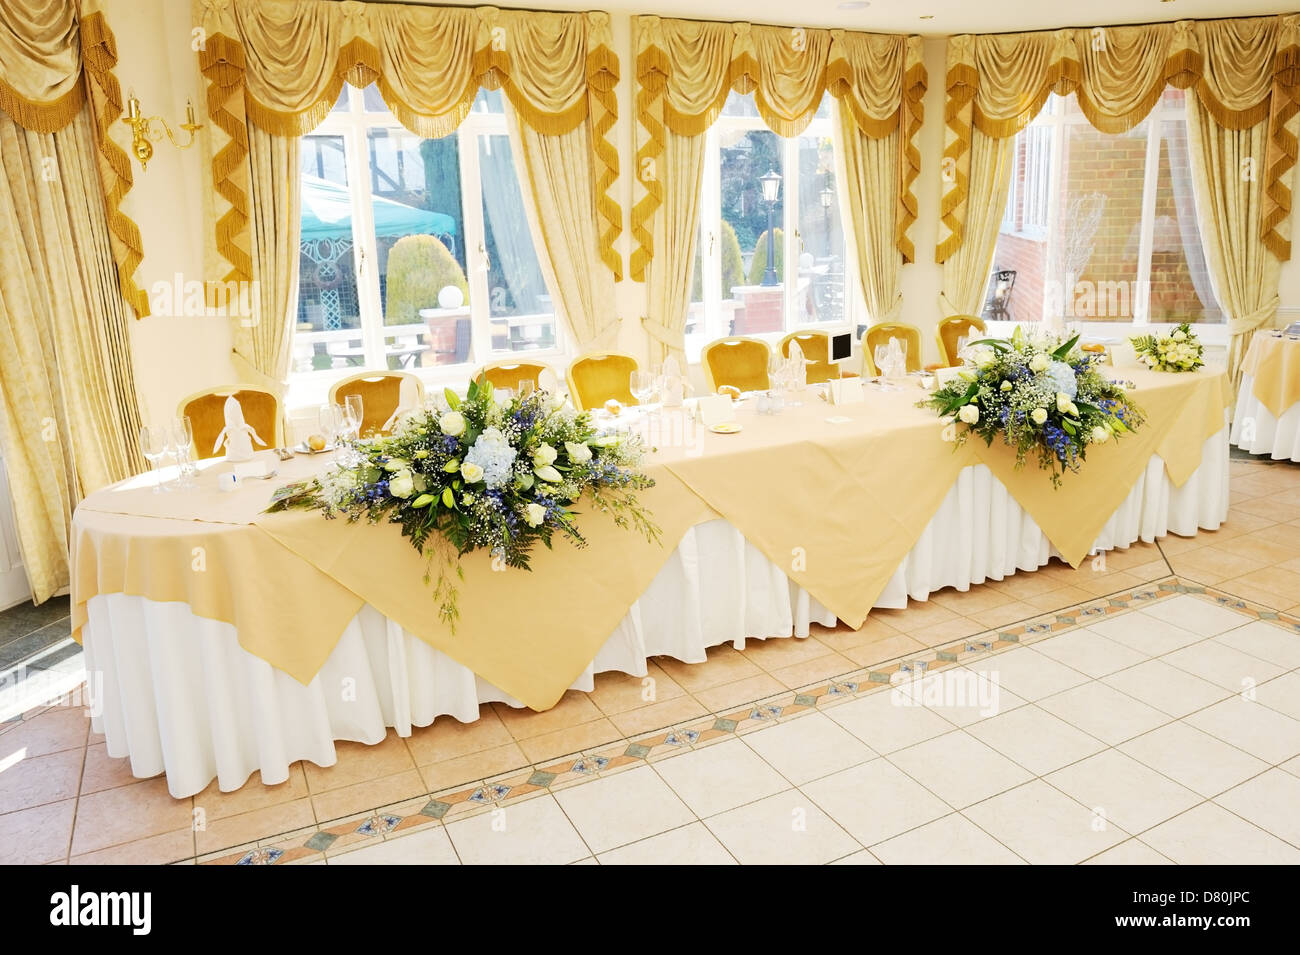 Décor de fleurs sur table at wedding reception Banque D'Images